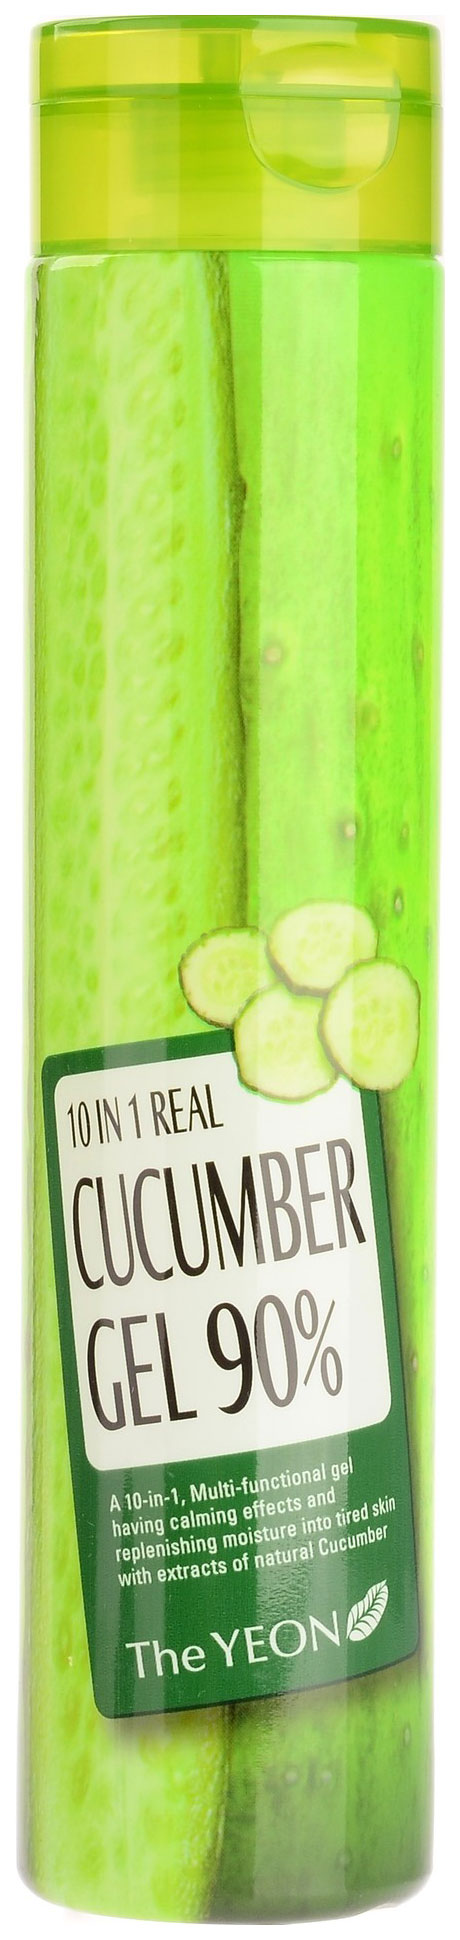 Средство для тела The Yeon 10 в 1 Real Cucumber Gel 90% 300 мл